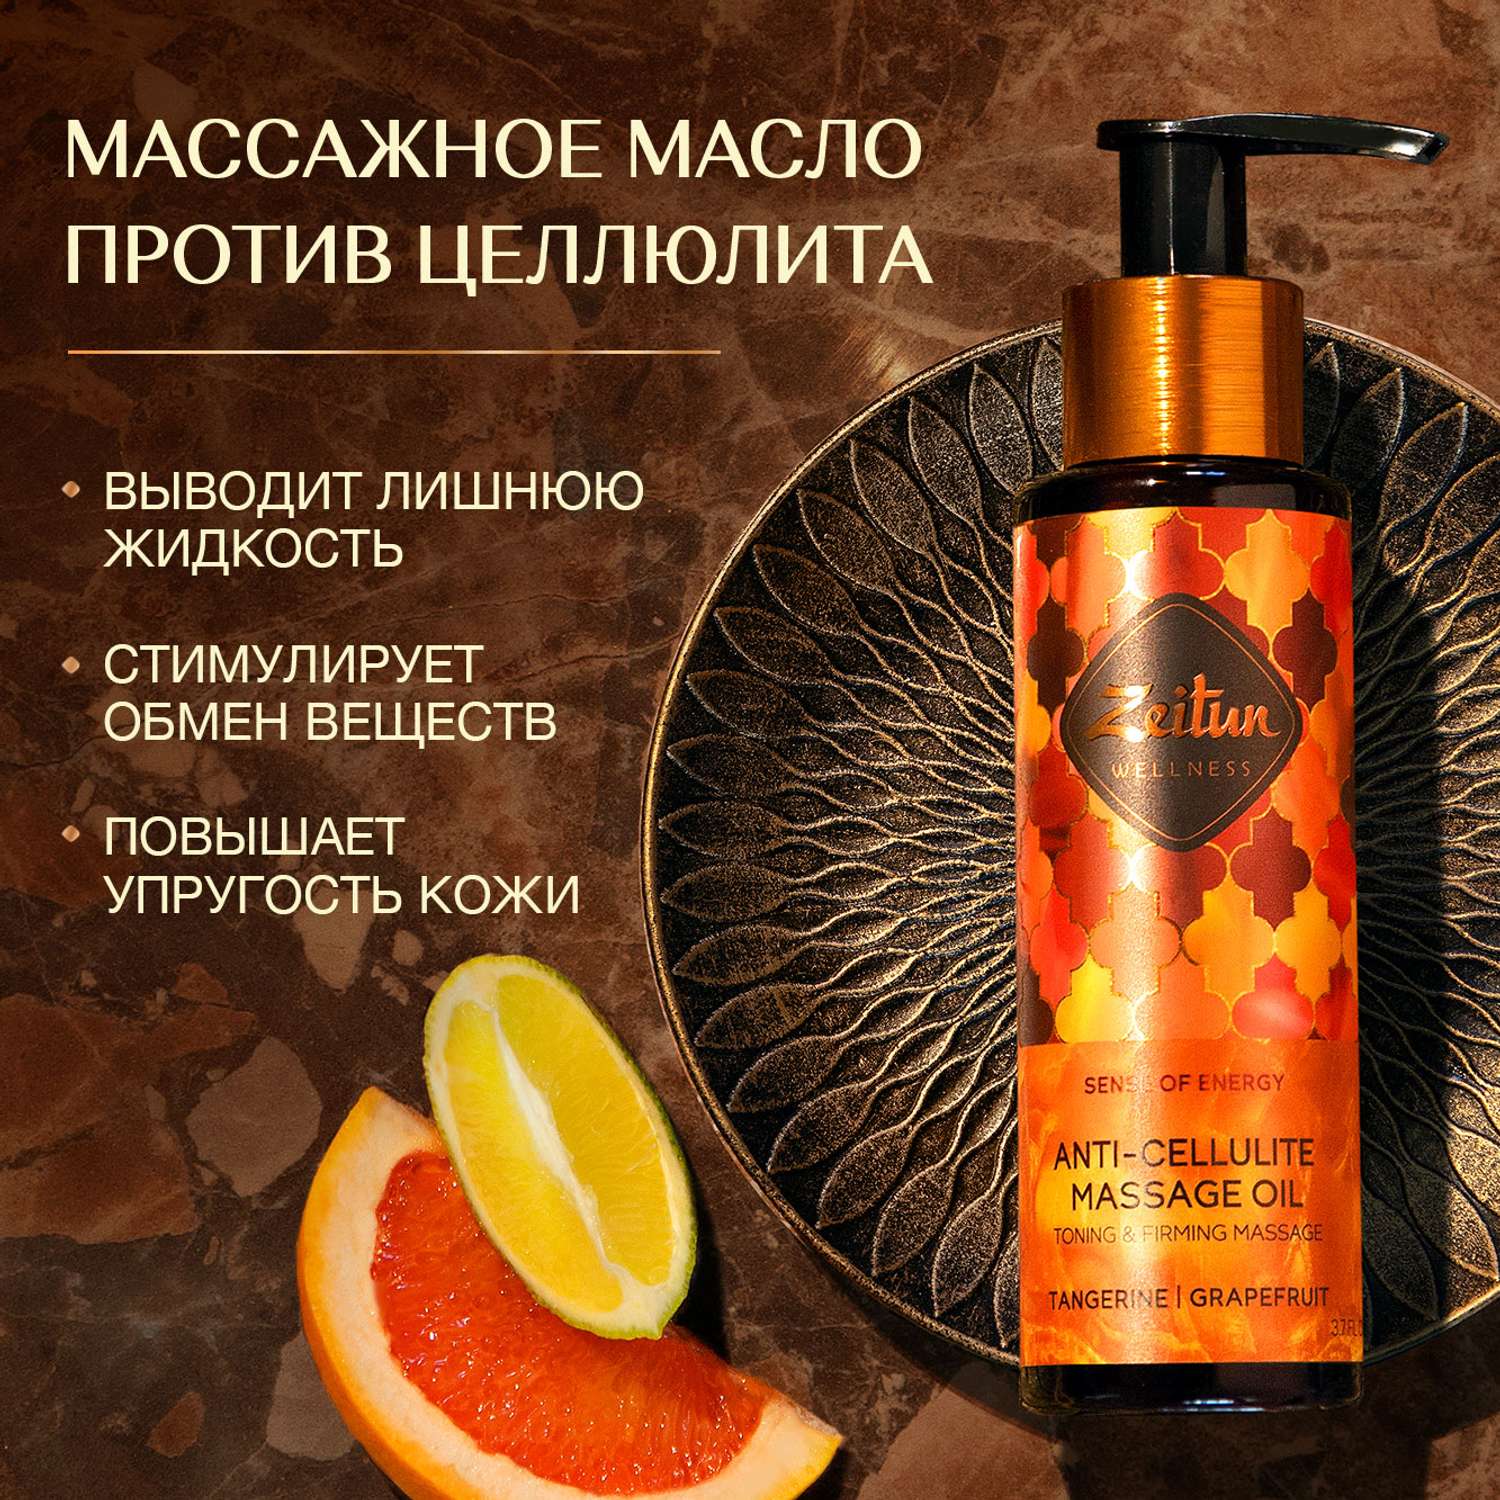 Антицеллюлитное масло Zeitun массажное Ритуал энергии c эфирными маслами мандарина и грейпфрута от растяжек 110 мл - фото 1